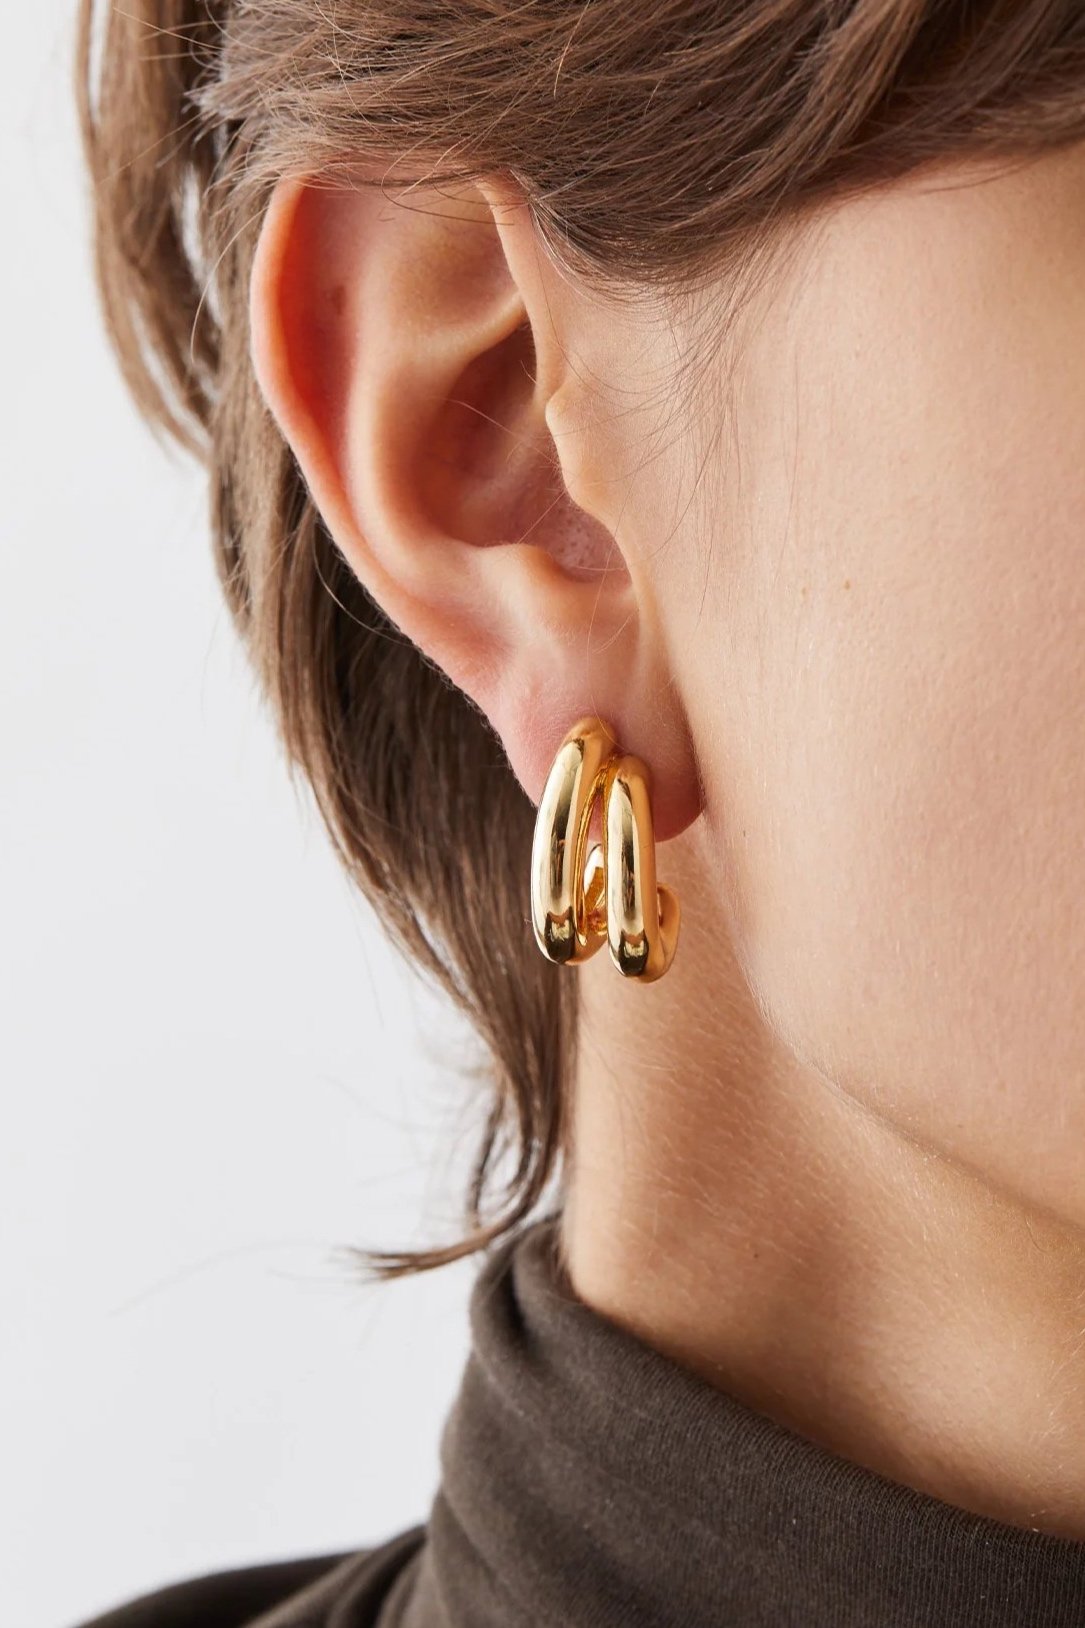 Jenny Bird Sylvie Hoop Earrings in Gold